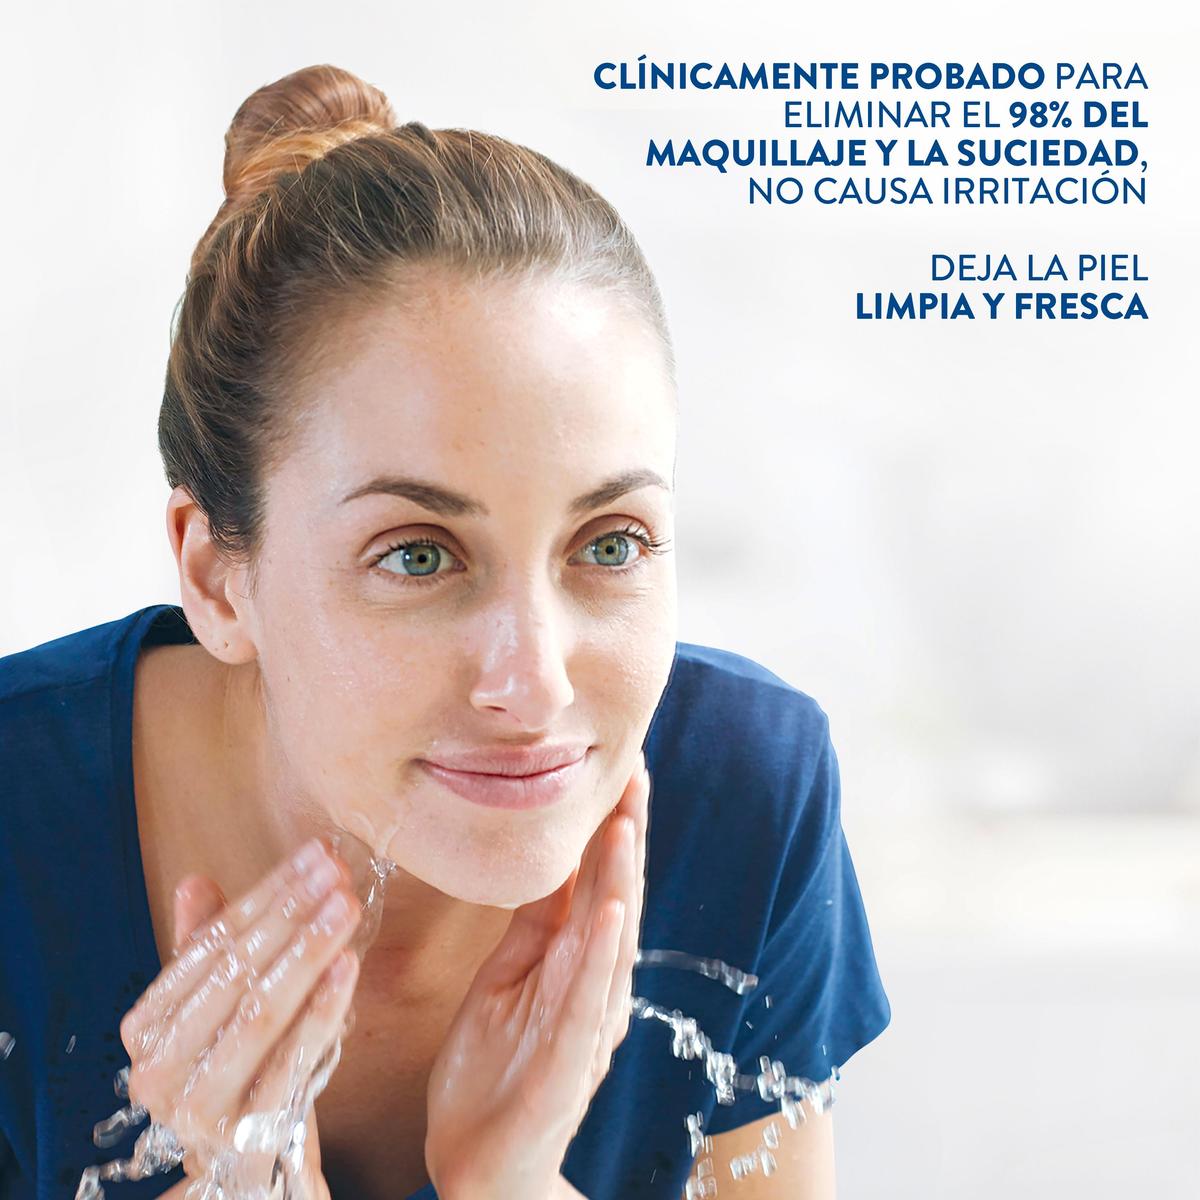 Cetaphil, Toallitas de limpieza facial, c/25 – Derma Express MX